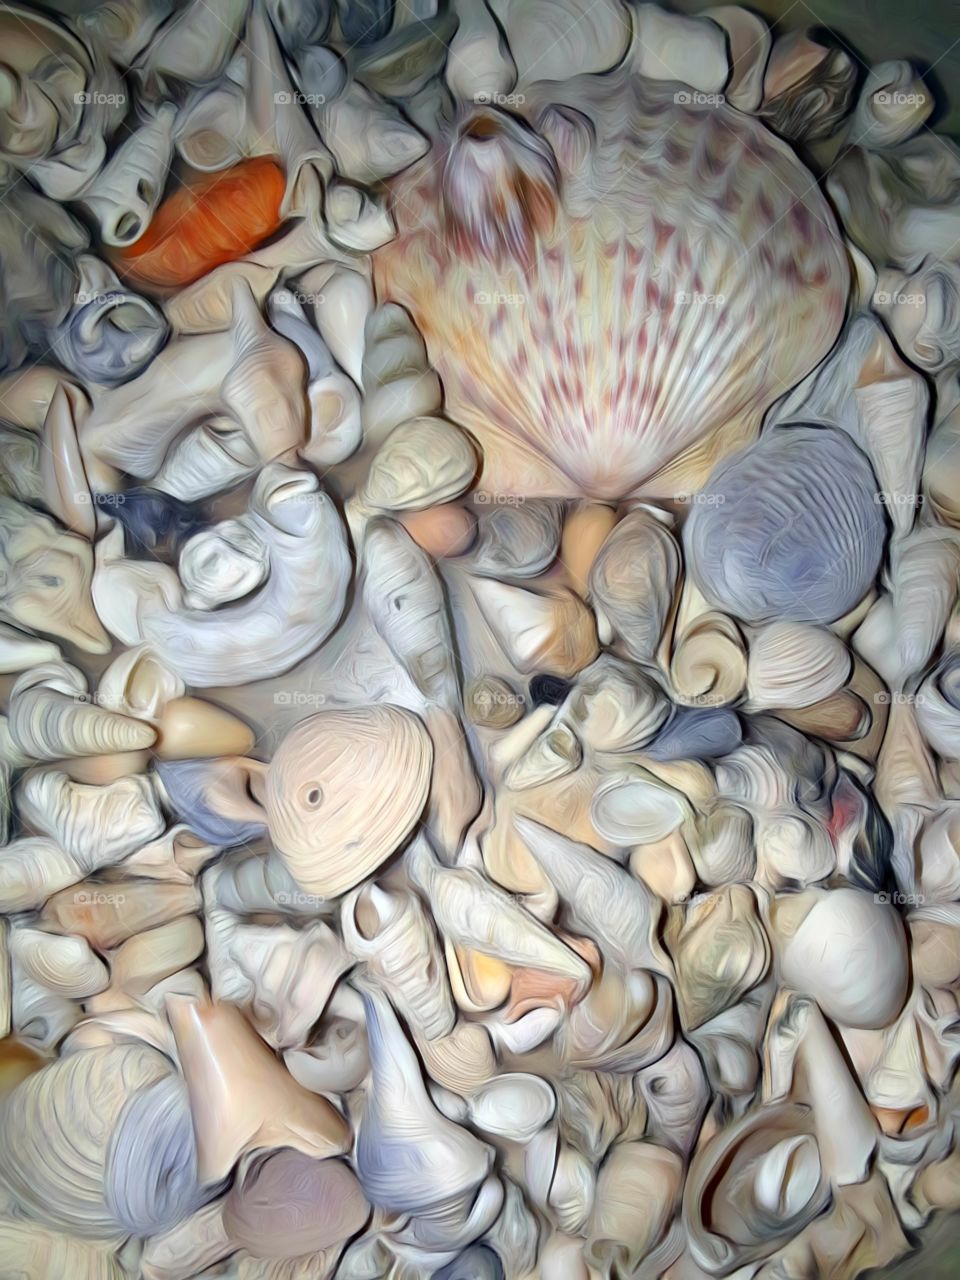 more seashell art